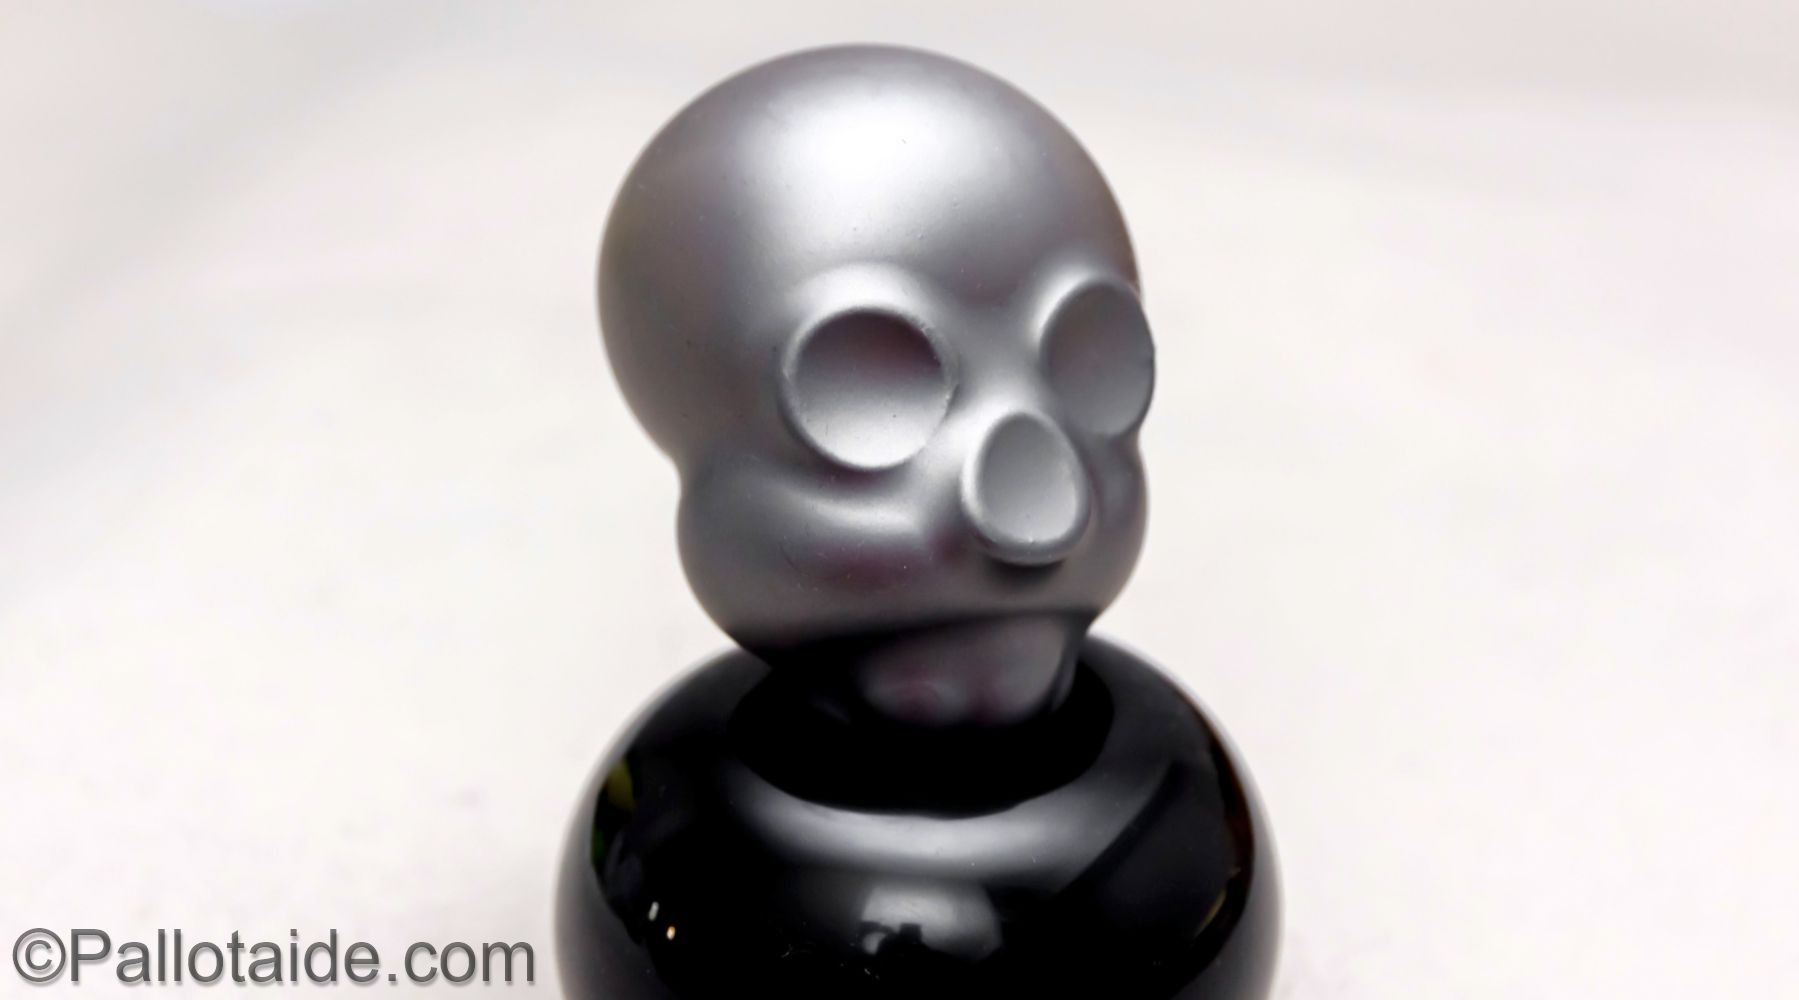 metallic skull - made using 100% latex balloons by Pallotaide - tehty pelkistä lateksi-ilmapalloista. Metallinen pääkallo.